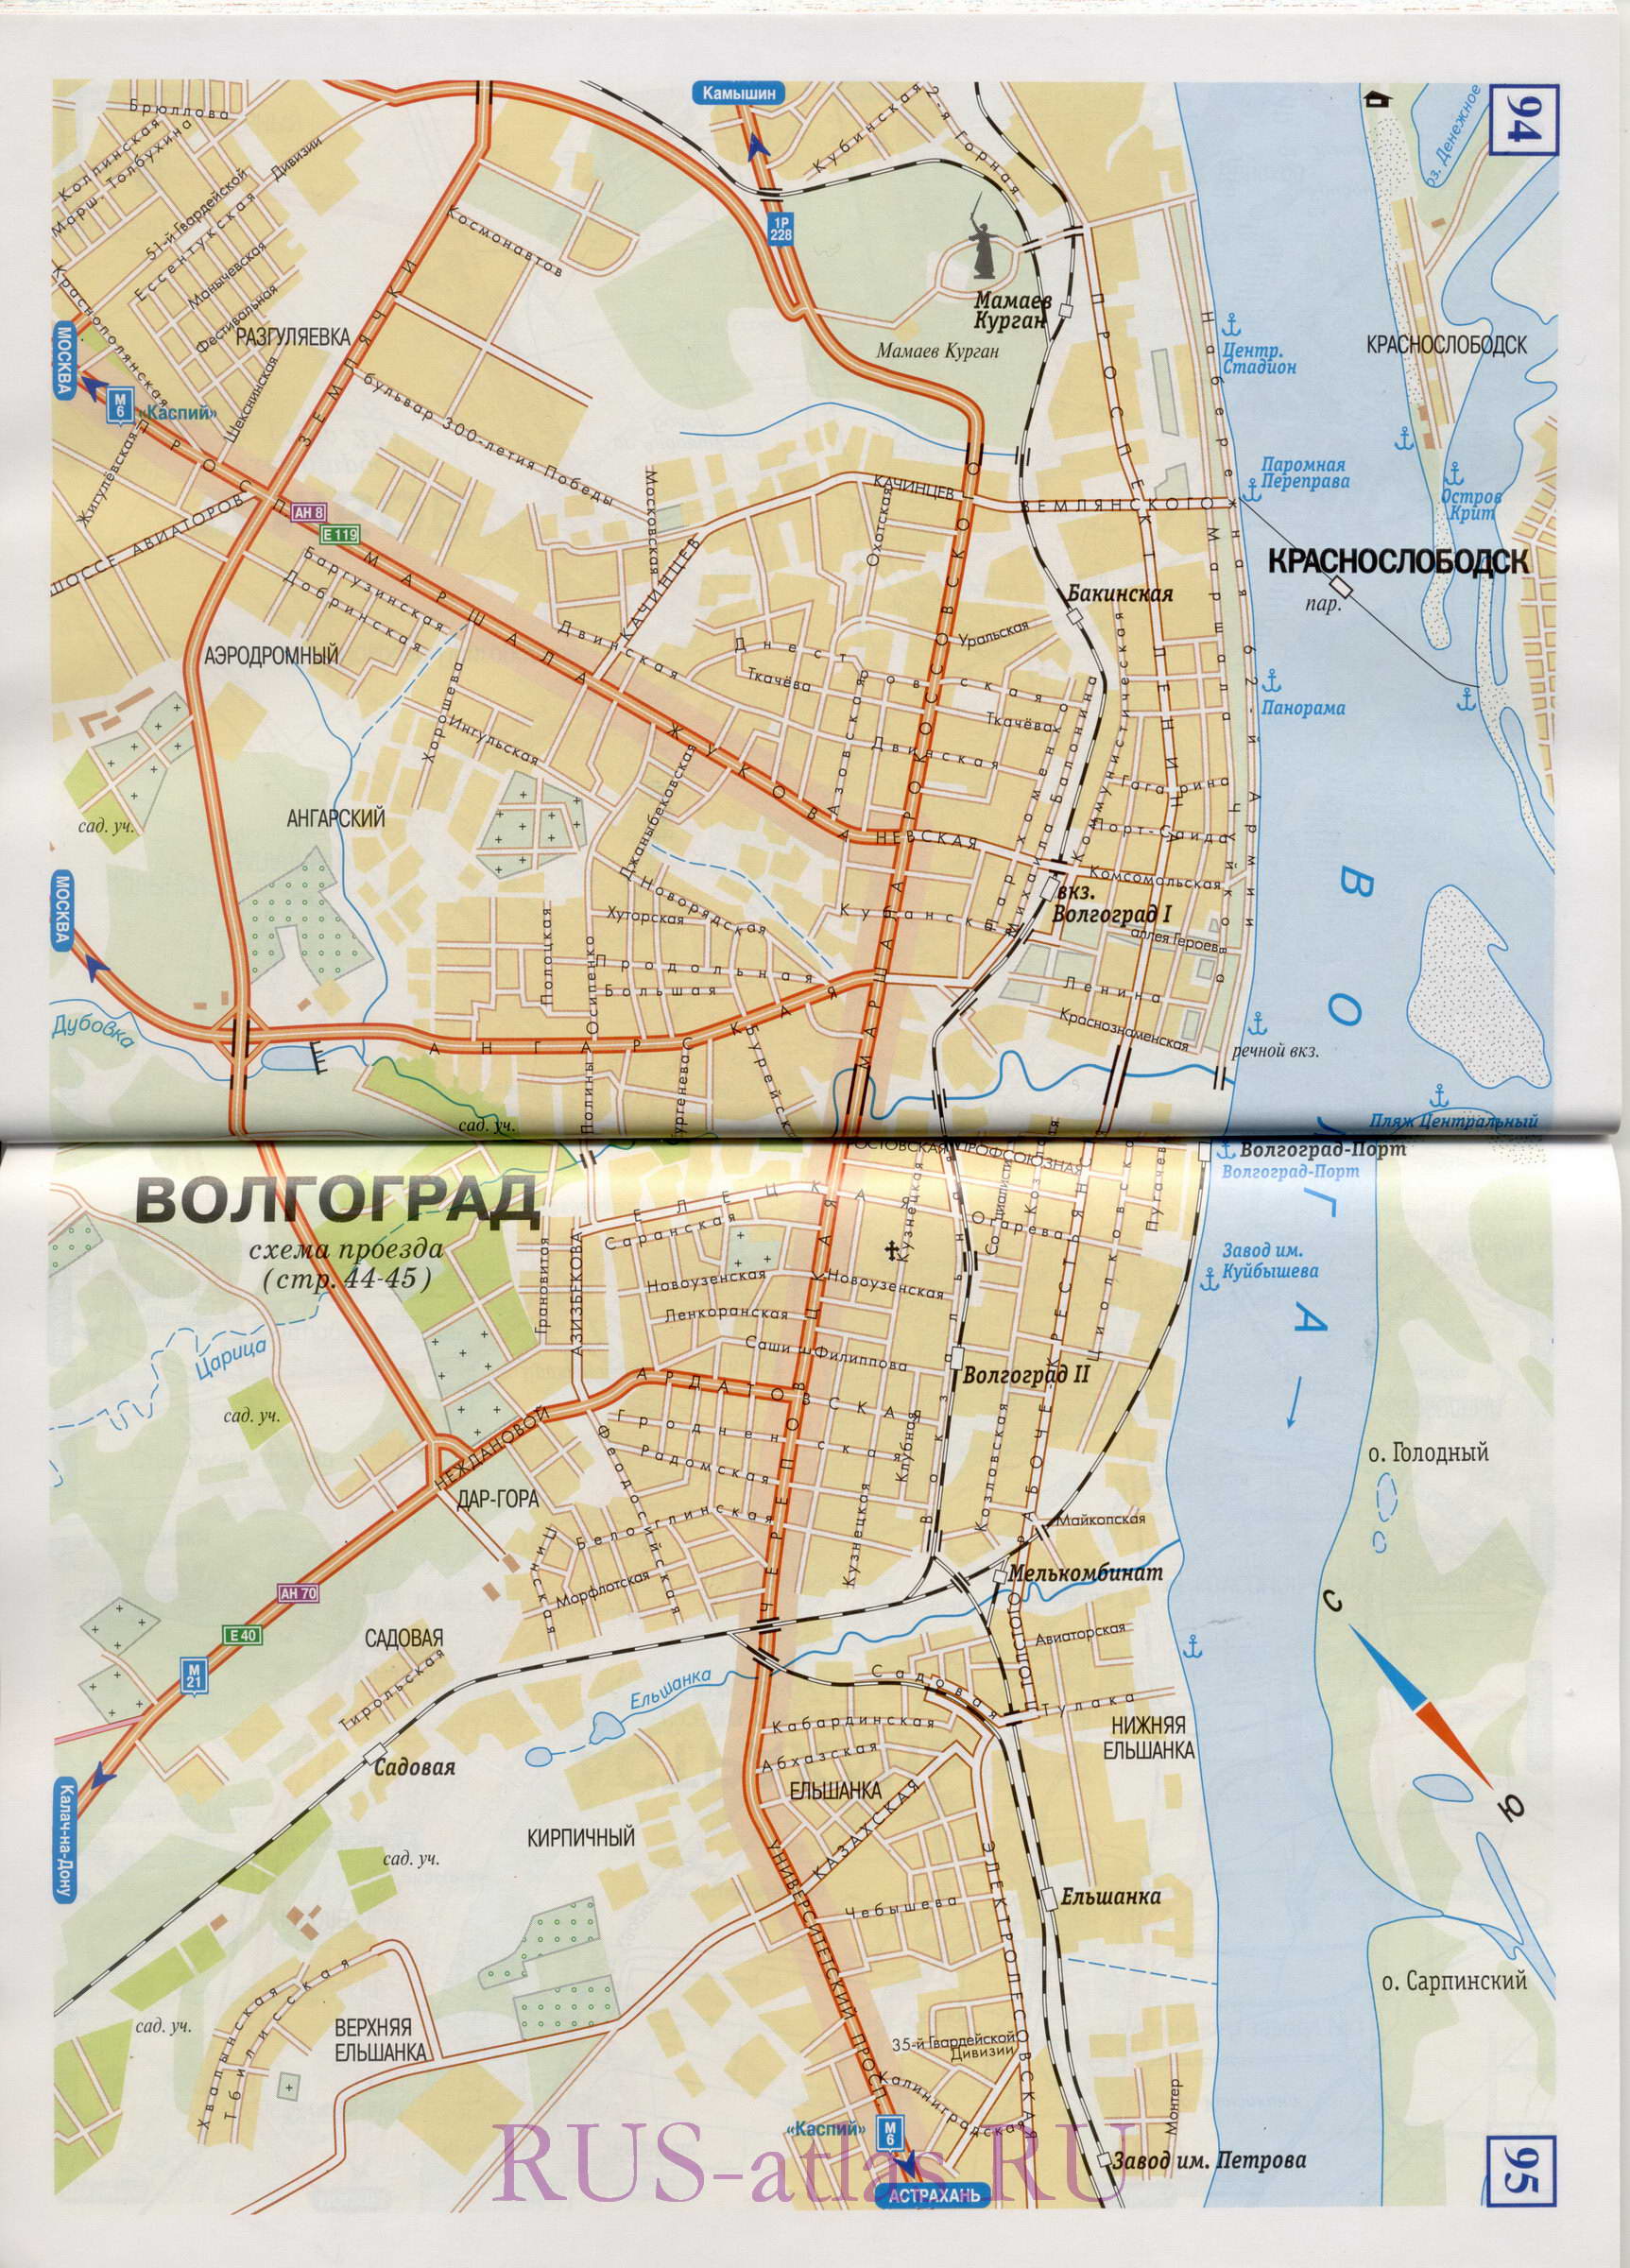  Карта улиц Волгограда. Подробная карта города Волгоград с названиями улиц и схемой проезда грузового транспорта, A0 - 